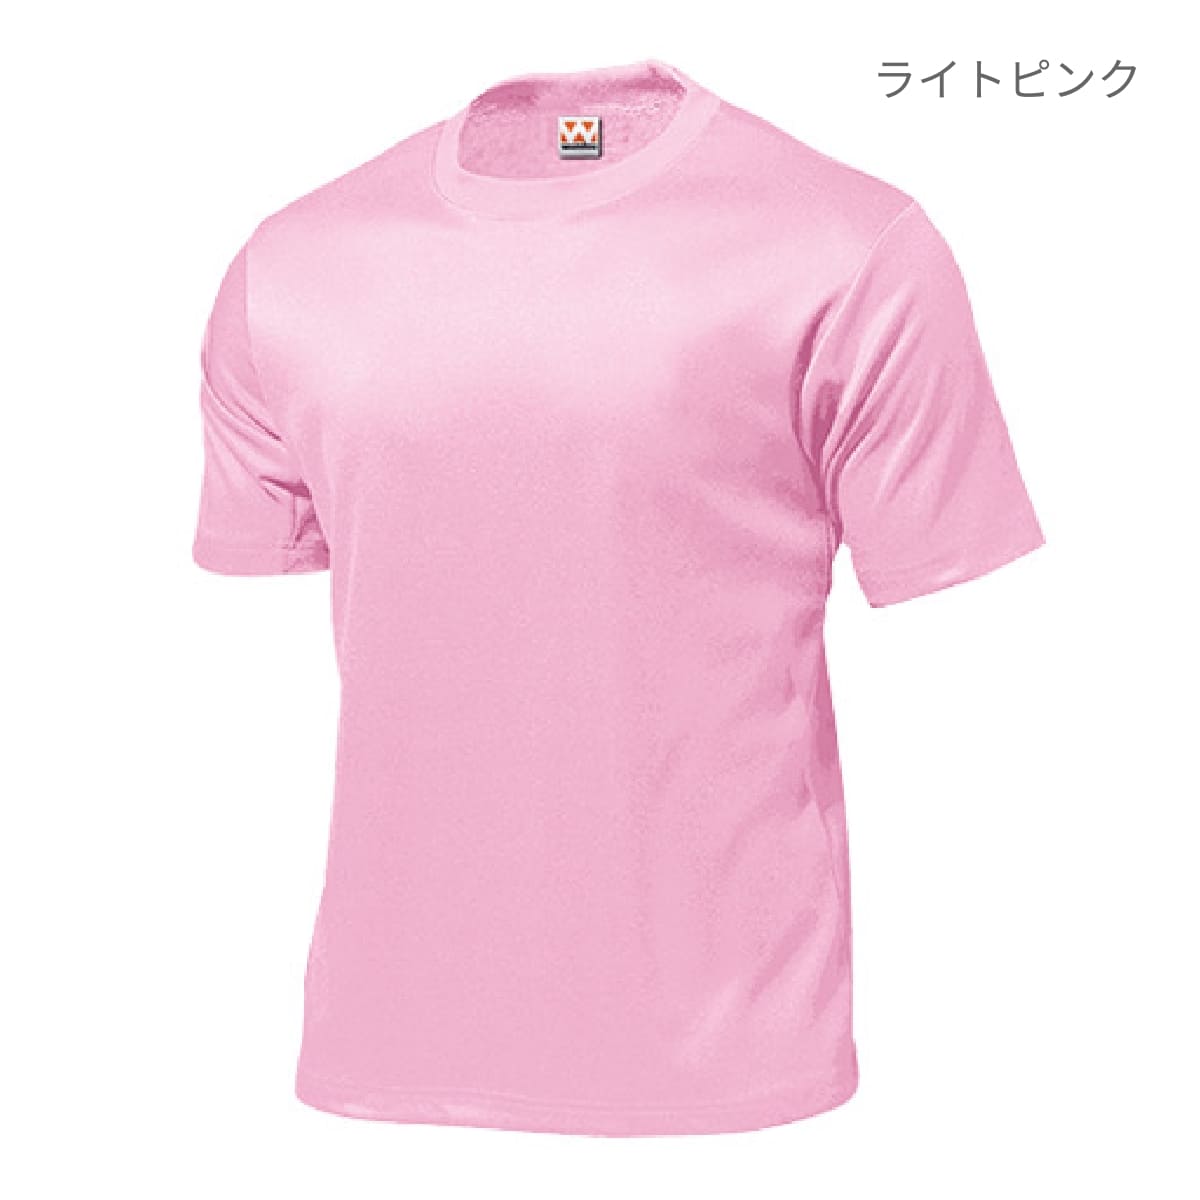 【送料無料】タフドライTシャツ | ビッグサイズ | 1枚 | P110 | ライトグリーン